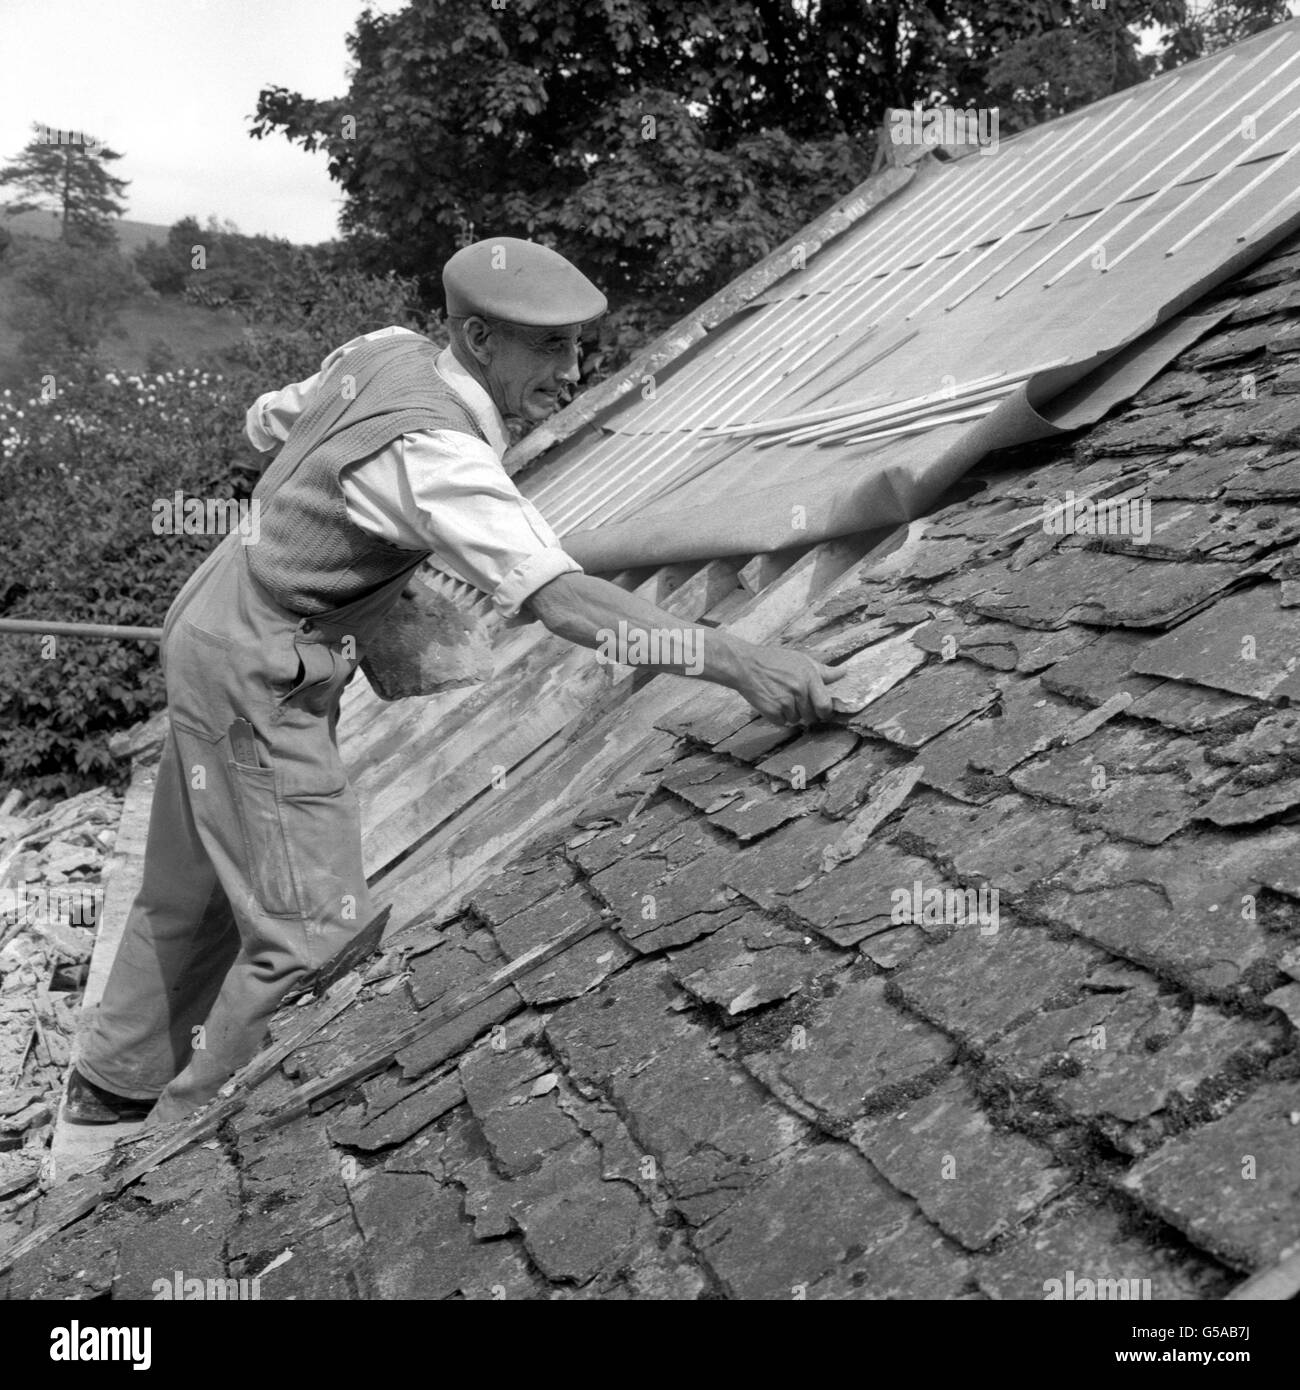 Den Cotswolds dabei zu helfen, ihr traditionelles Aussehen zu bewahren, sind Menschen wie Mr. R. Davis, der damit beschäftigt ist, das Mill House, bei Naunton, Gloucestershire, mit Cotswold-Steinfliesen (Schiefer) zu überdecken. Stockfoto